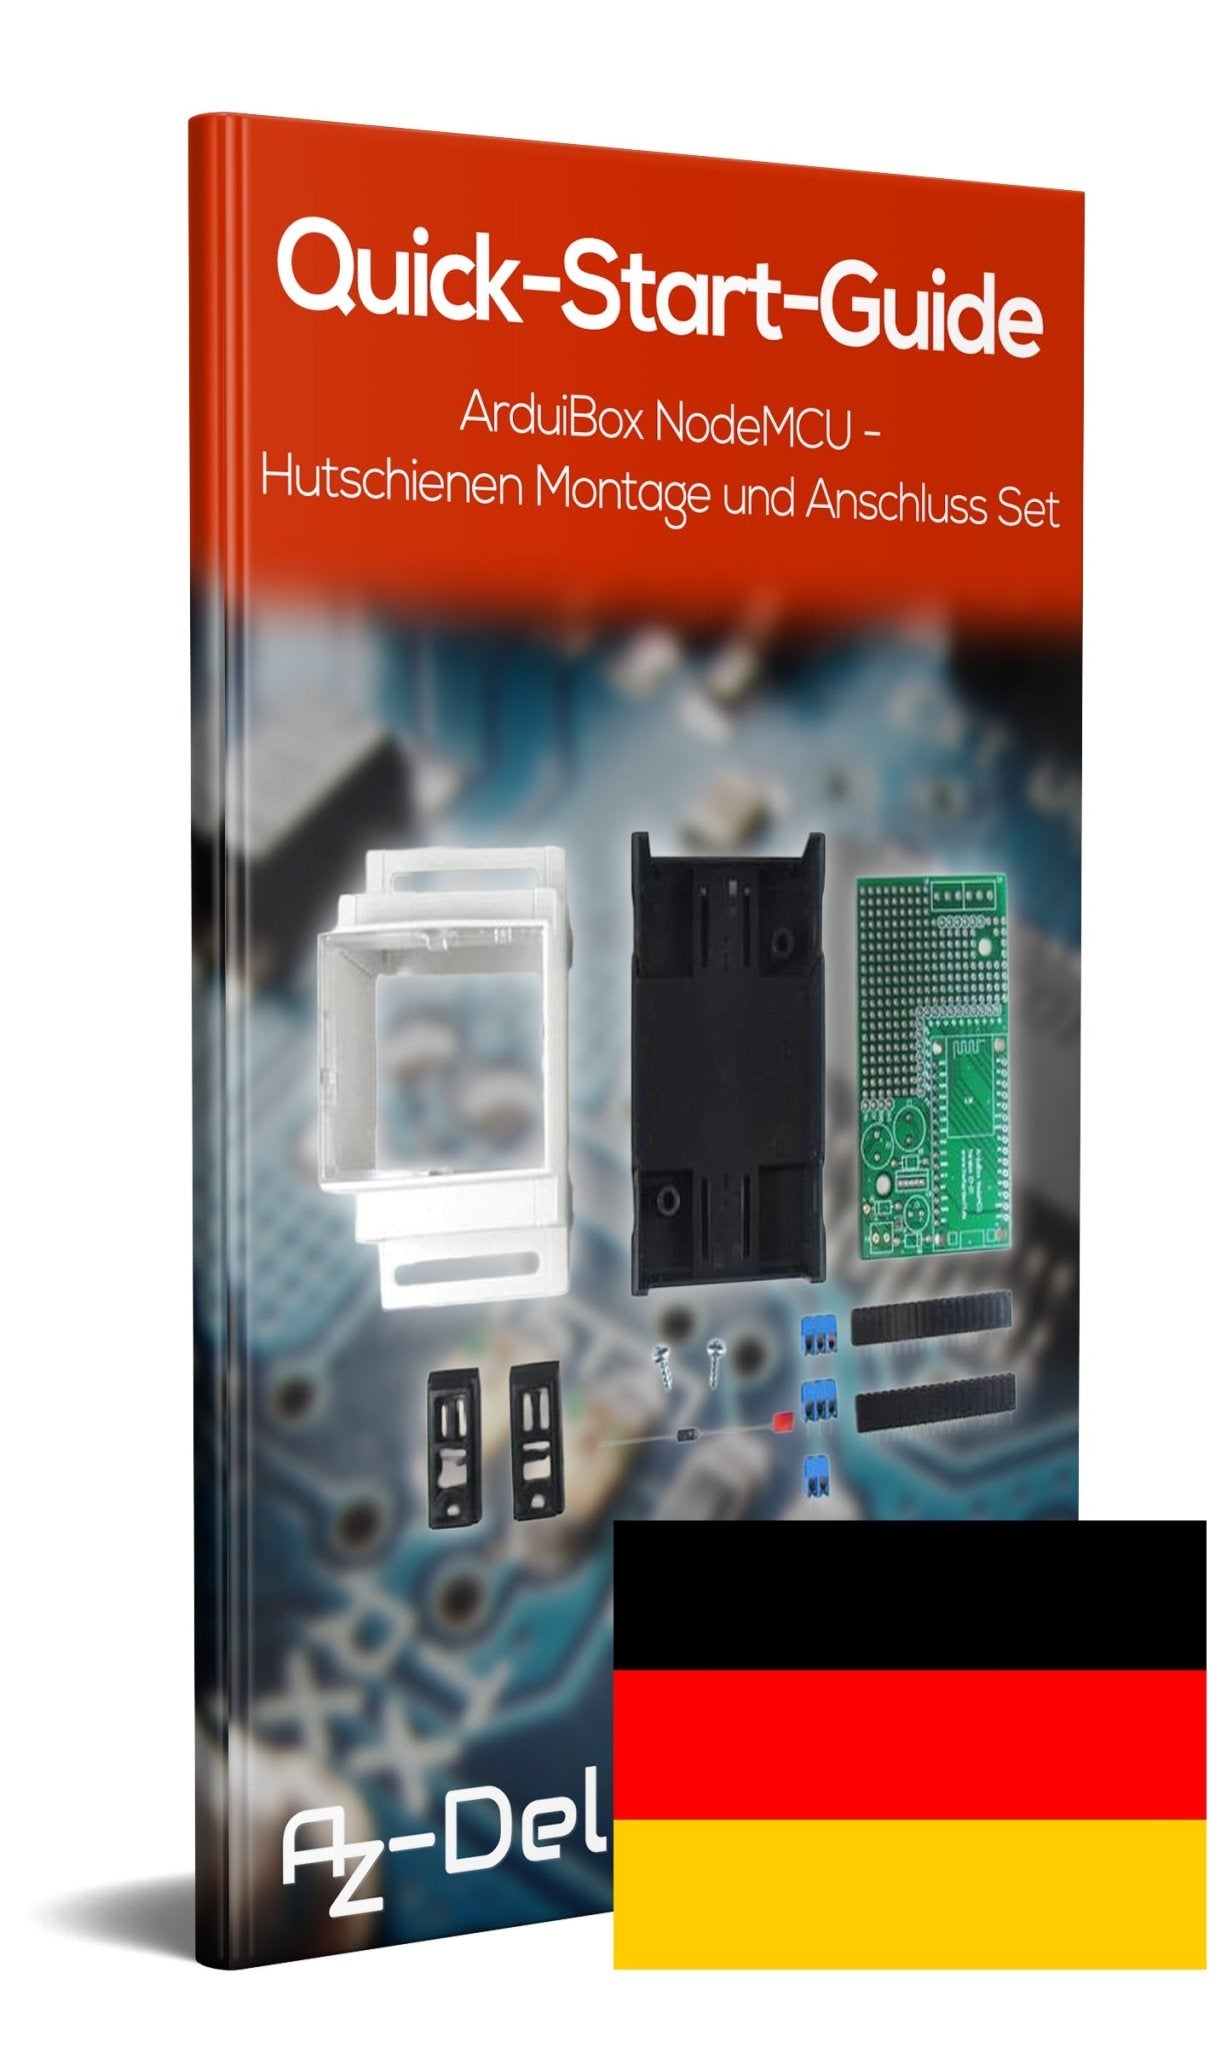 ArduiBox NodeMCU - Hutschienen Montage- und Anschluss Set - AZ-Delivery